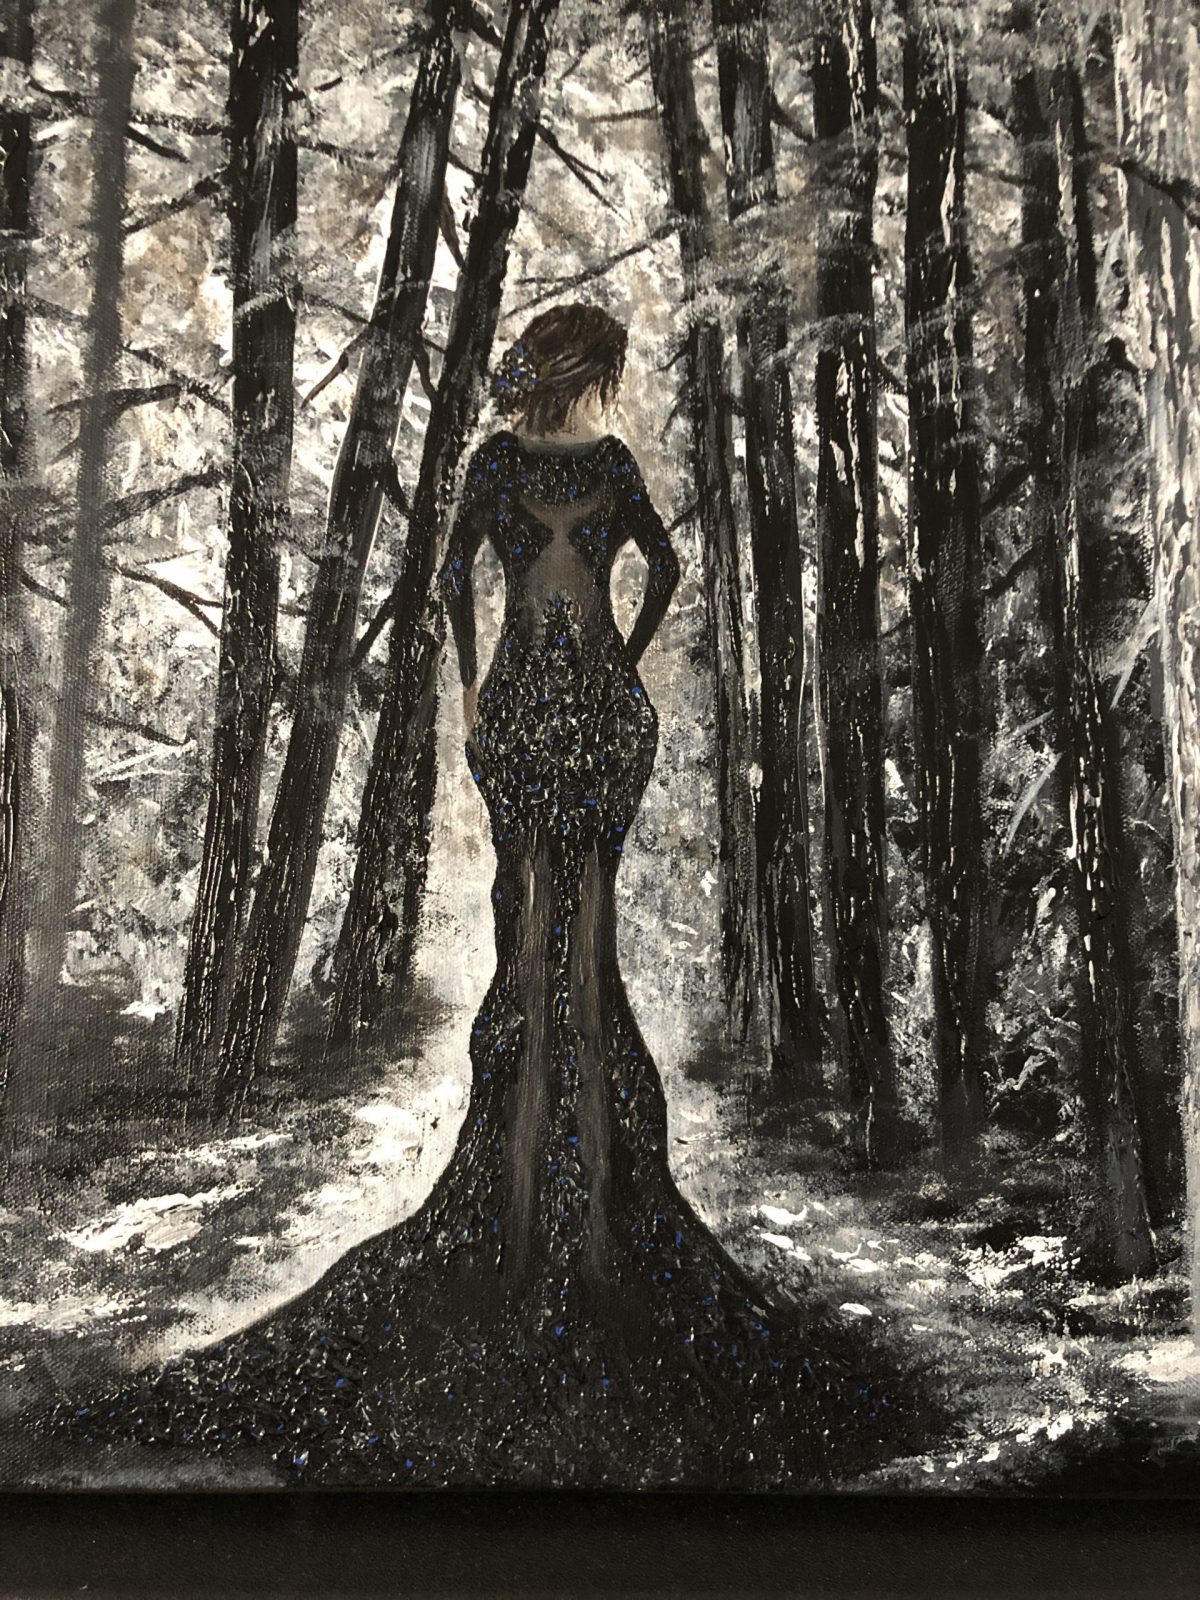 La veuve noire, gros plan de la femme - La veuve noire - peinture acrylique réalisé au couteau présentant une veuve noire entrant dans une forêt en noir et blanc